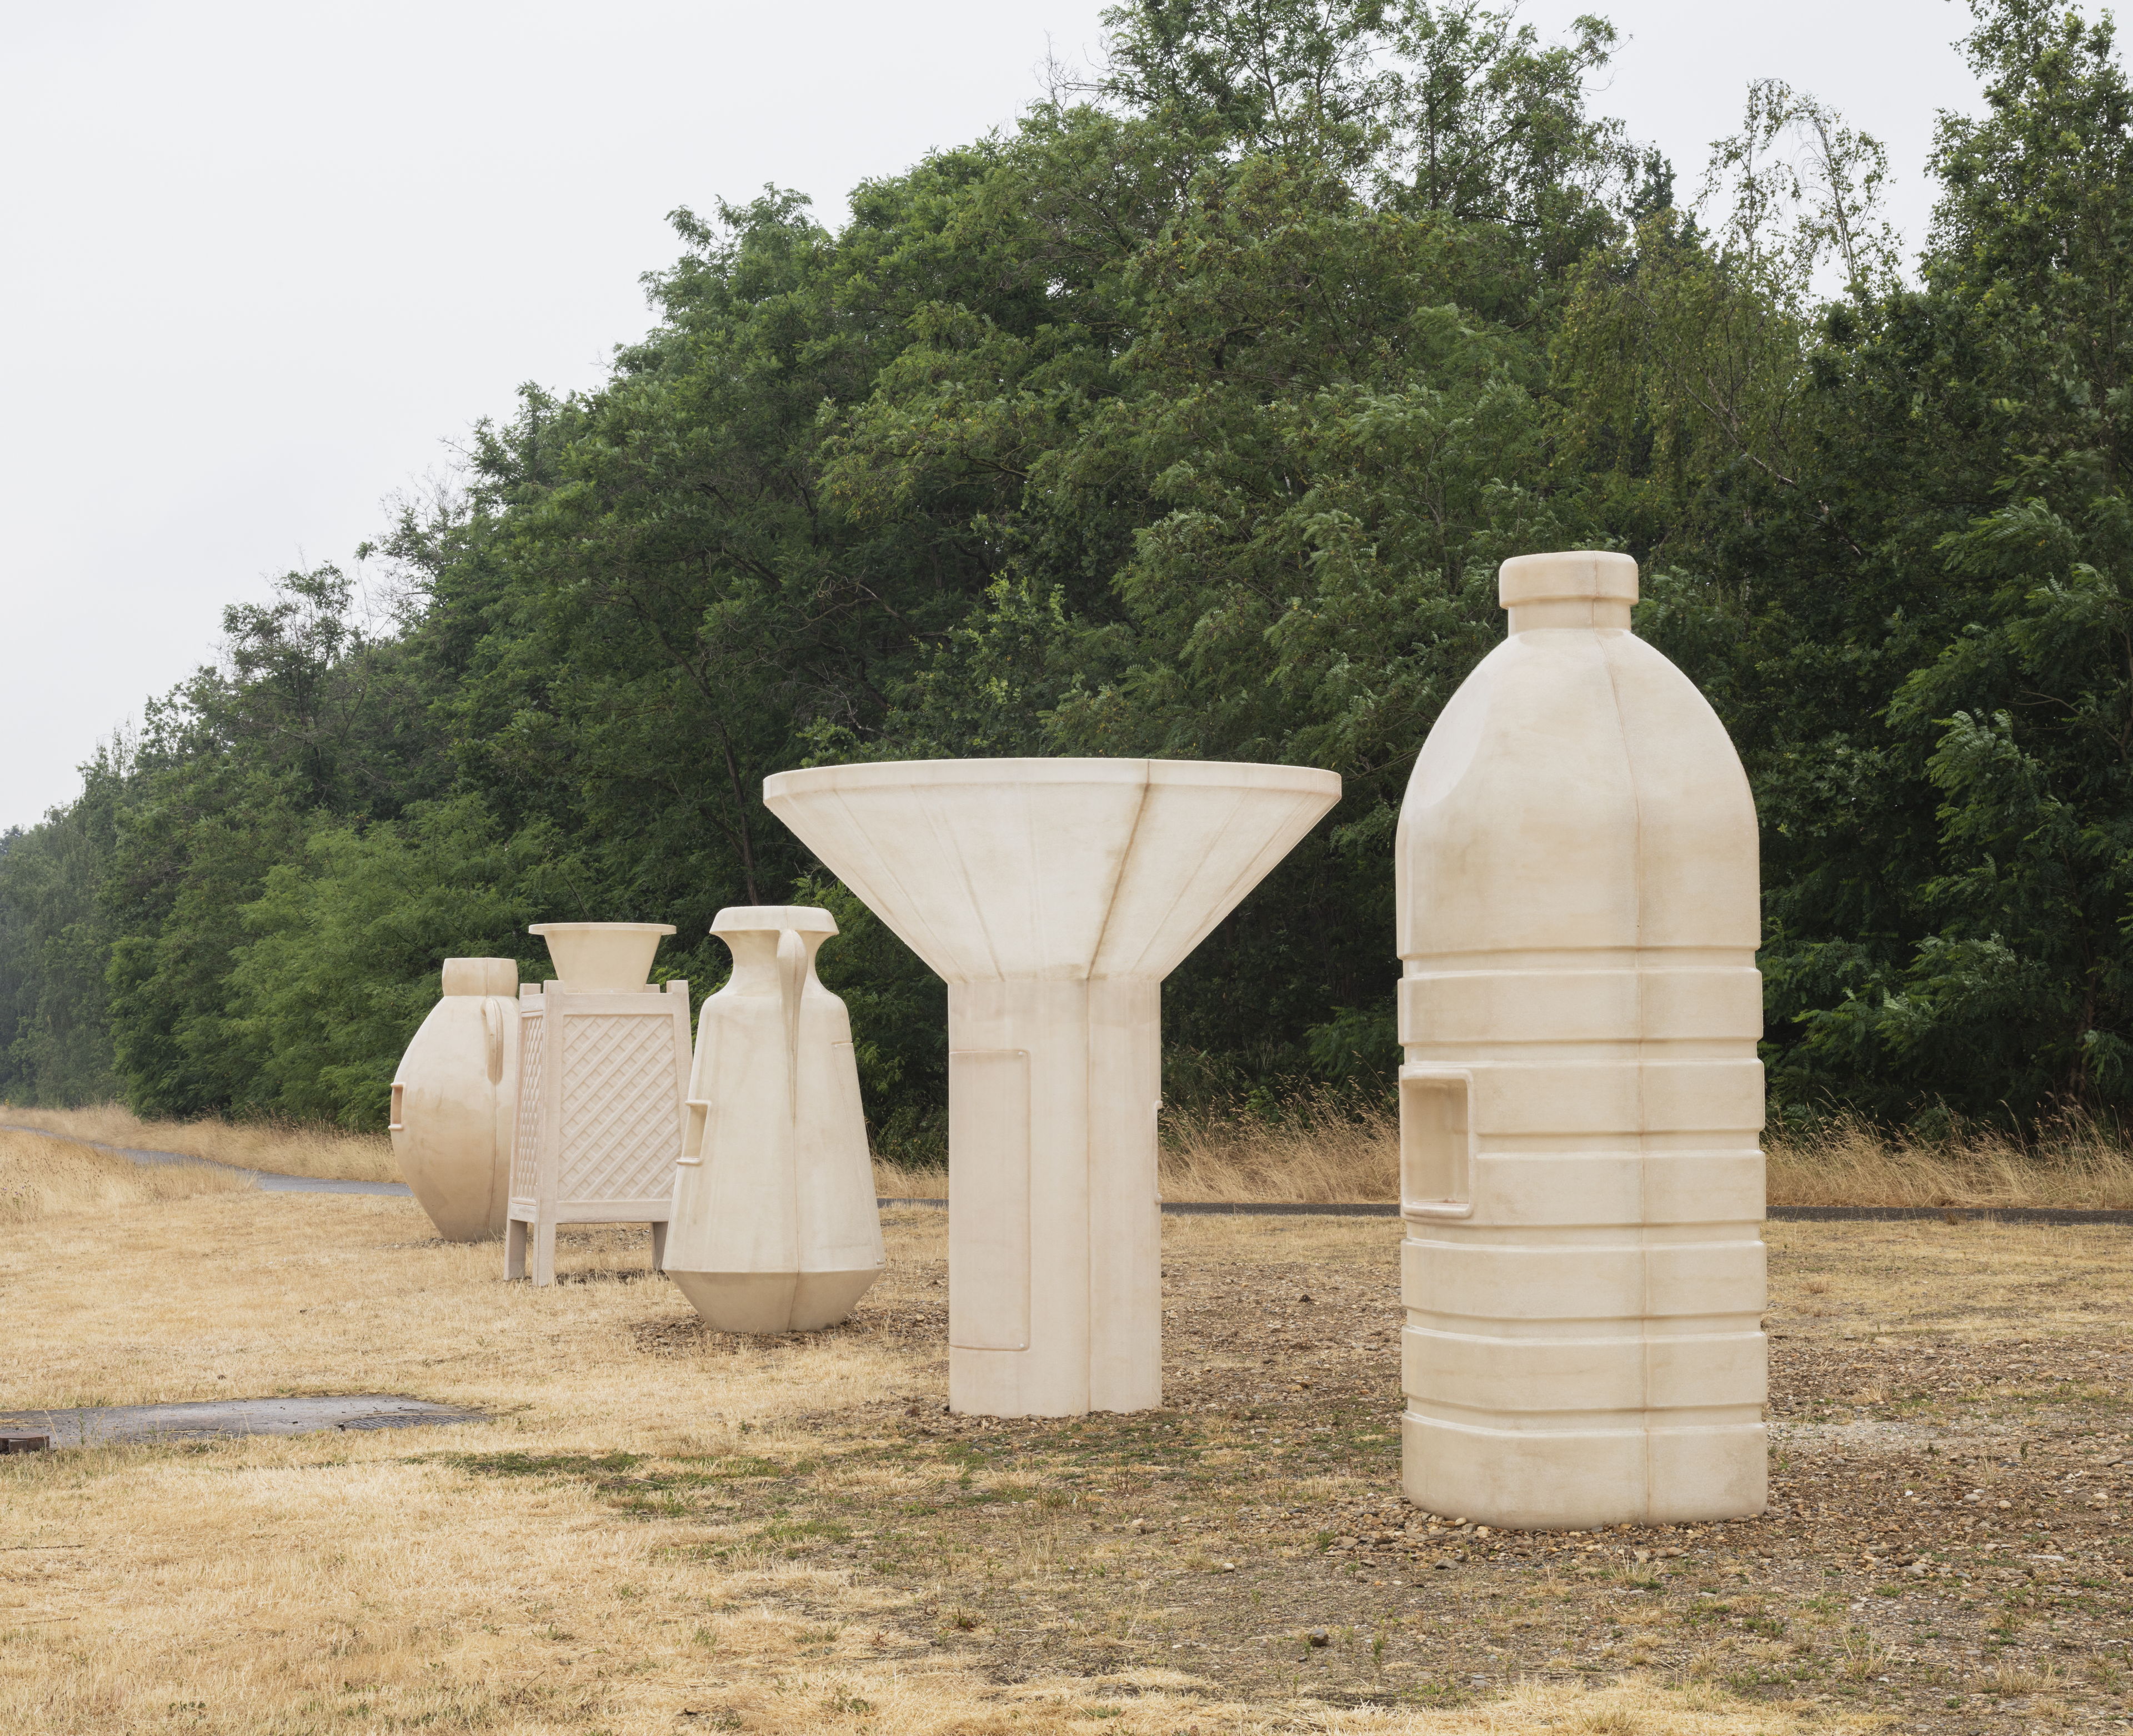 Kunstwerk van Alia Farid in Maasmechelen vestigt aandacht op uitdagingen waterbeheer